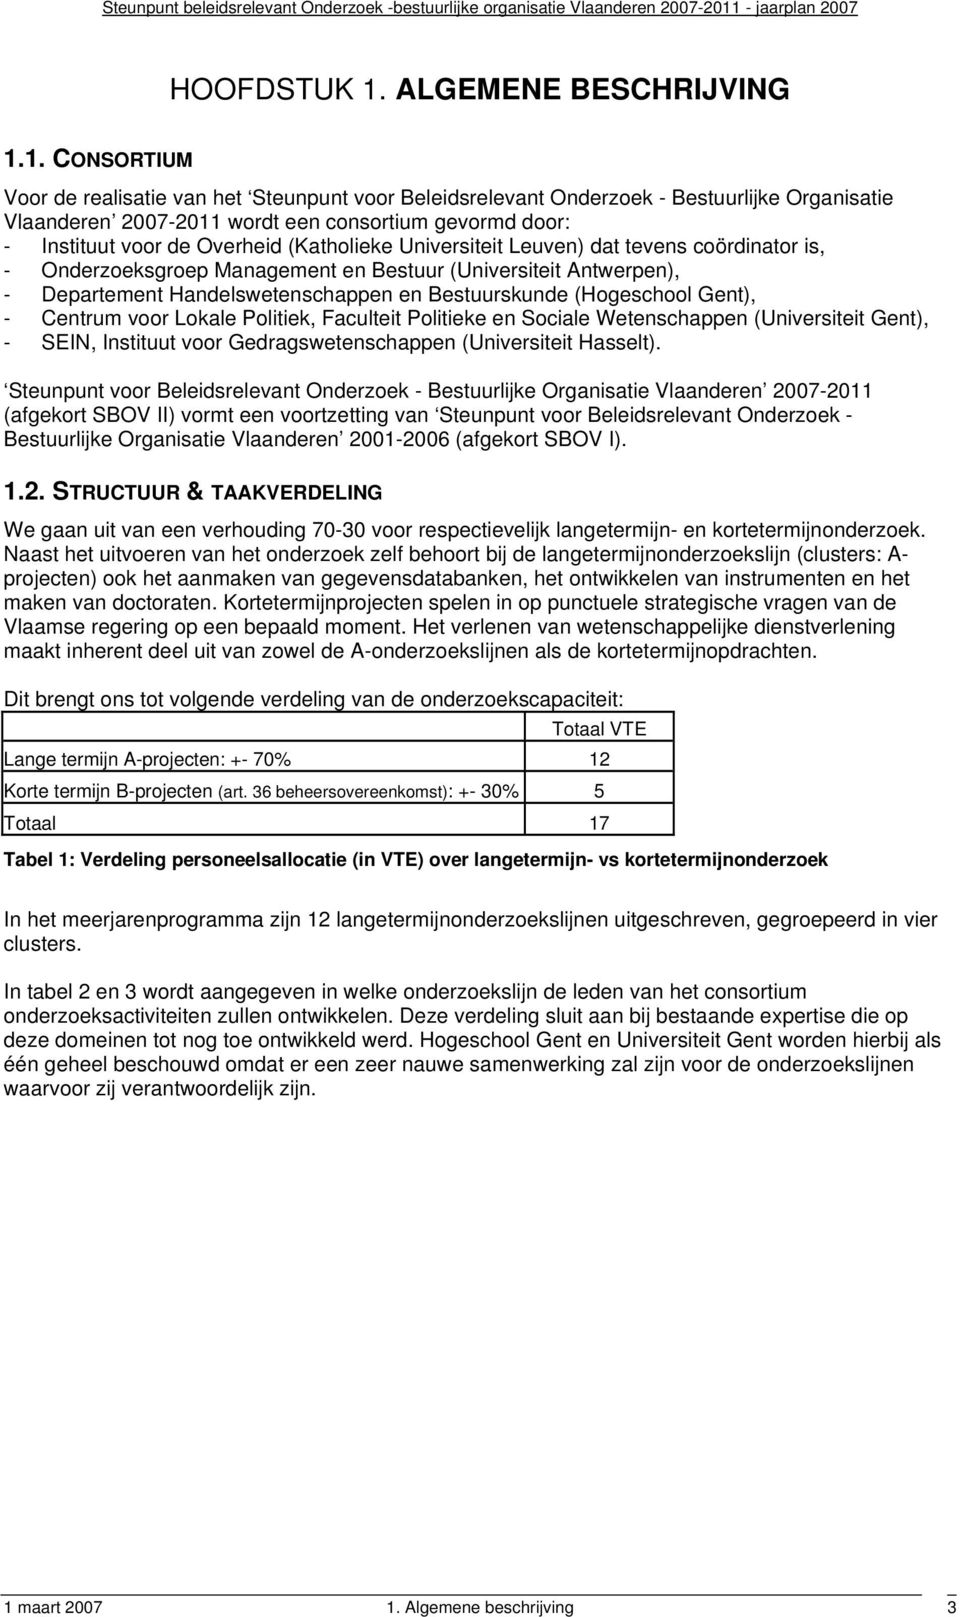 1. CONSORTIUM Voor de realisatie van het Steunpunt voor Beleidsrelevant Onderzoek - Bestuurlijke Organisatie Vlaanderen 2007-2011 wordt een consortium gevormd door: - Instituut voor de Overheid